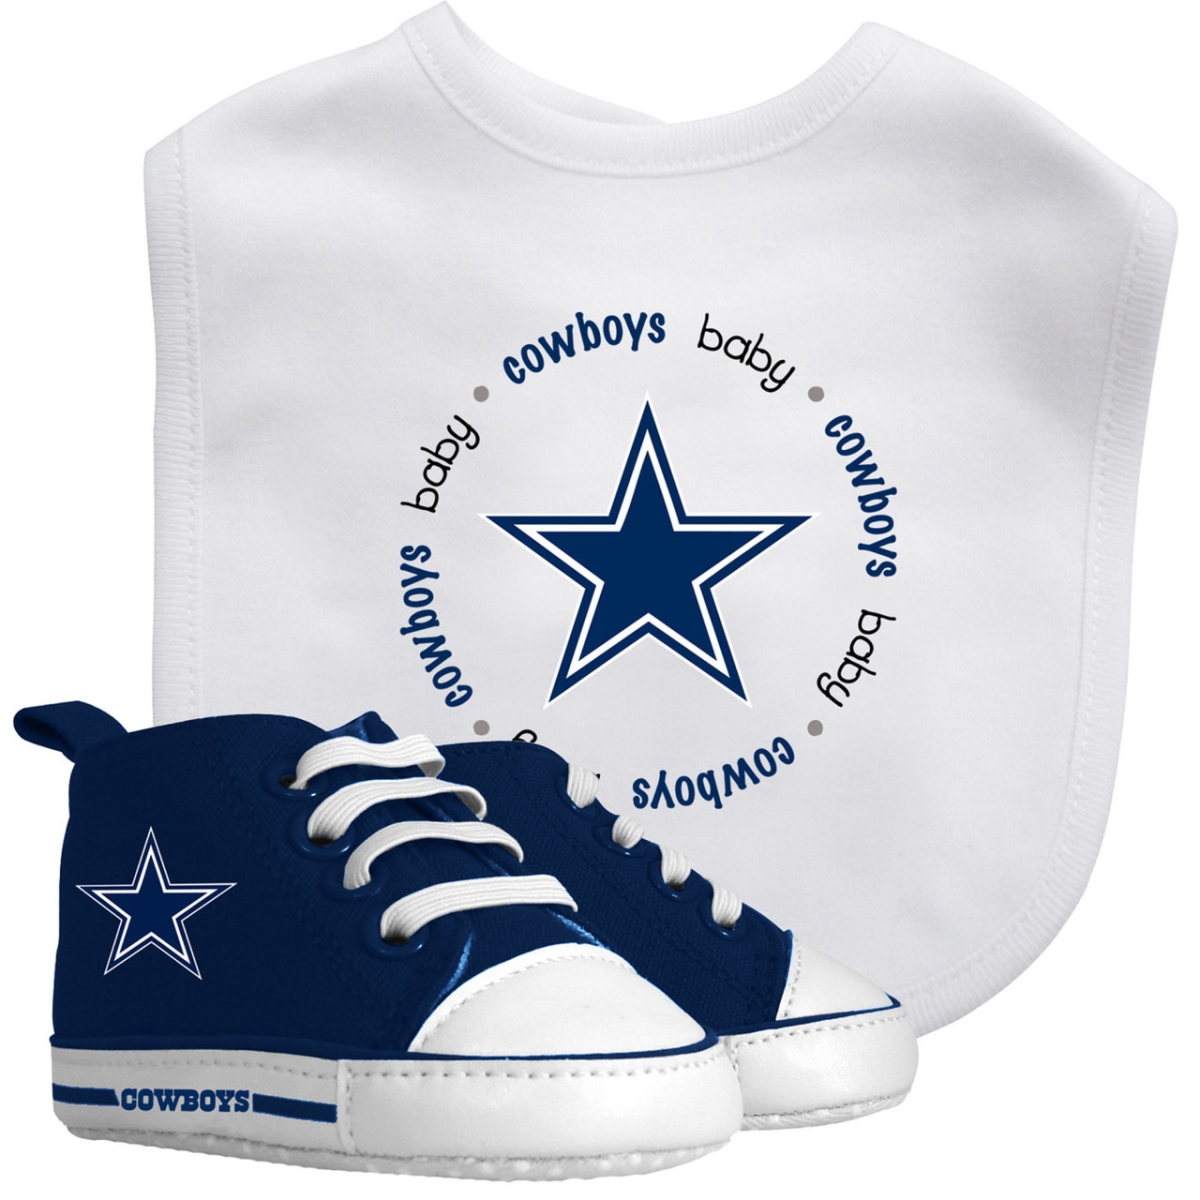 Masterpiece Usa MasterPieces Dallas Cowboys - 2-Piece Baby Gift Set